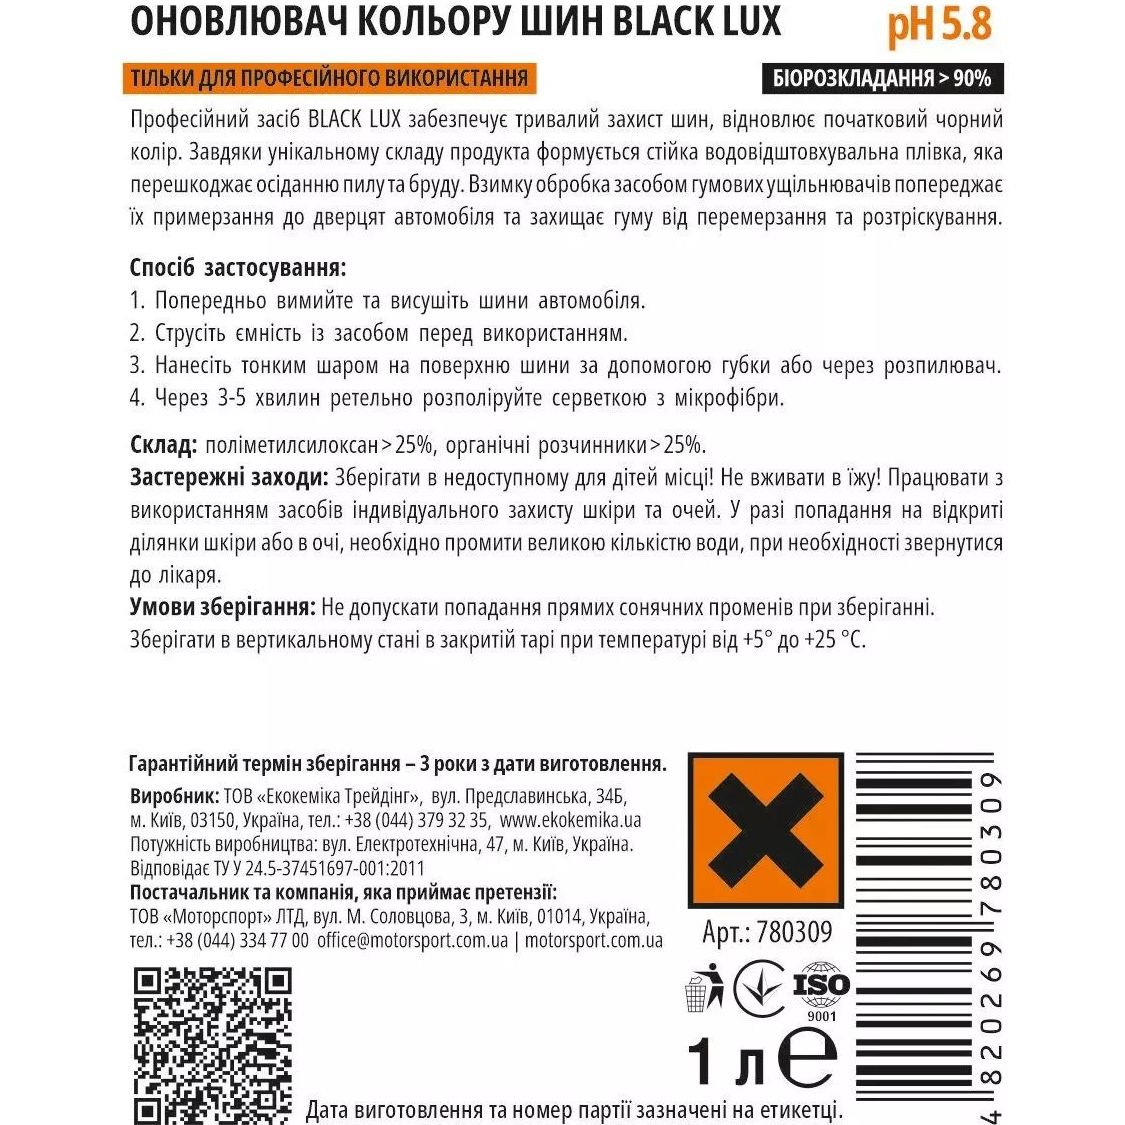 Оновлювач кольору шин Ekokemika Pro Line Black Lux, 1 л (780309) - фото 2